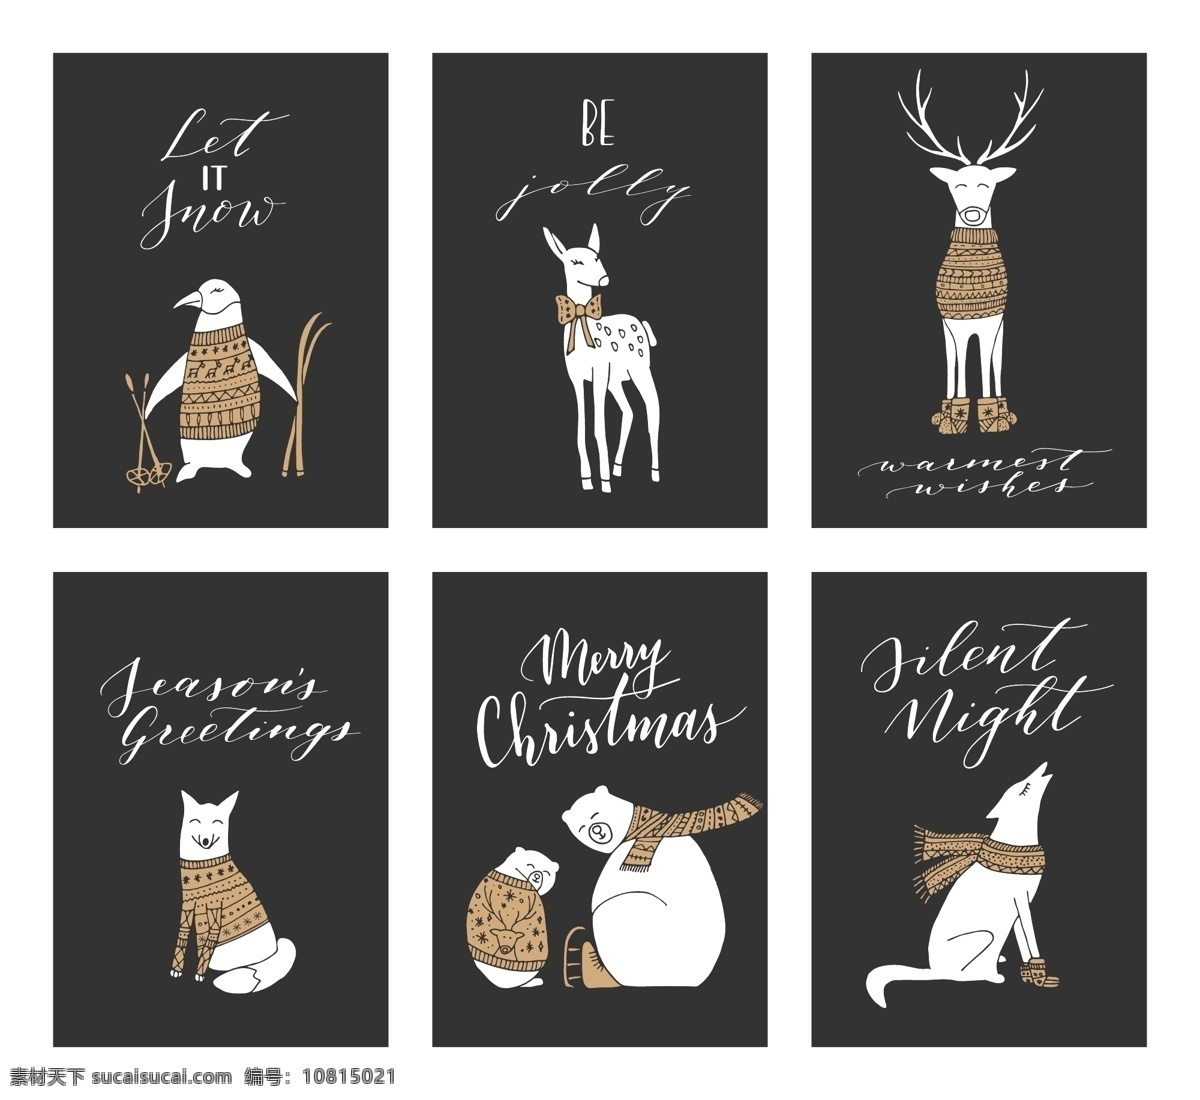 冬季 白熊 动物 海报 背景 矢量 设计素材 节日 祝福 卡片 创意 文艺 花纹 包装 黑白 装饰 图标 纹理 图案